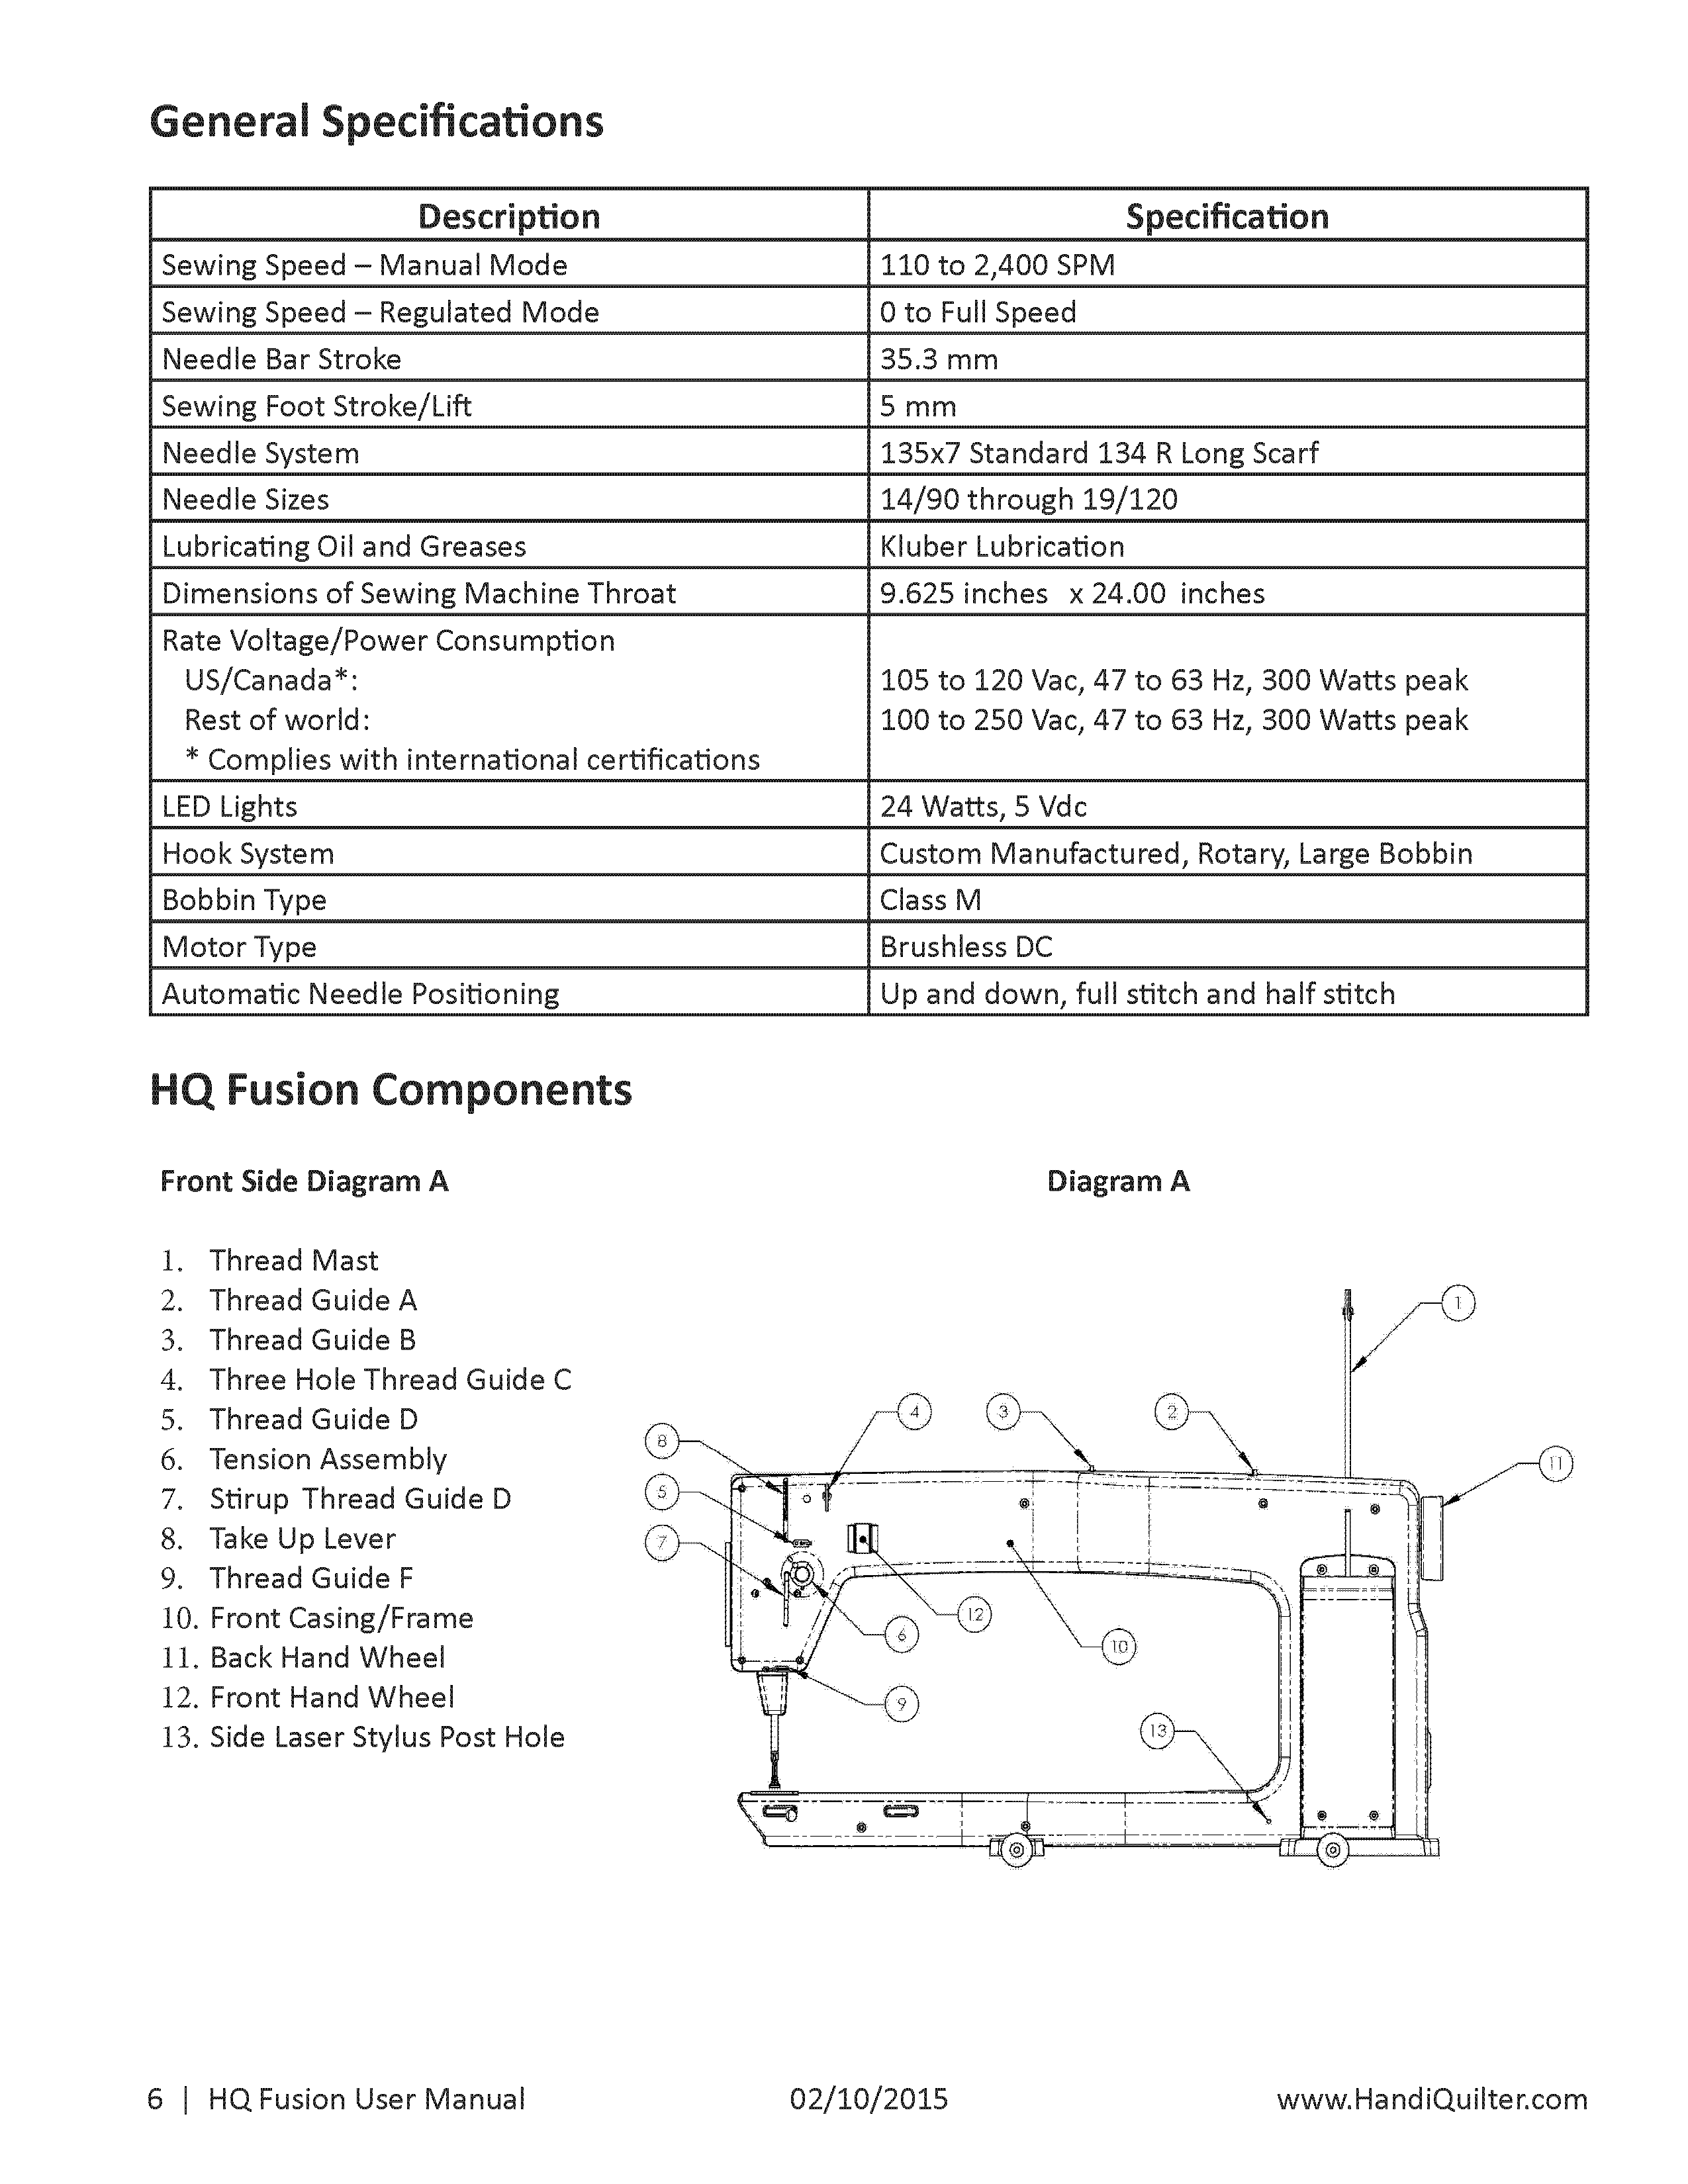 Fusion-manual-v3.1_Page_06.png